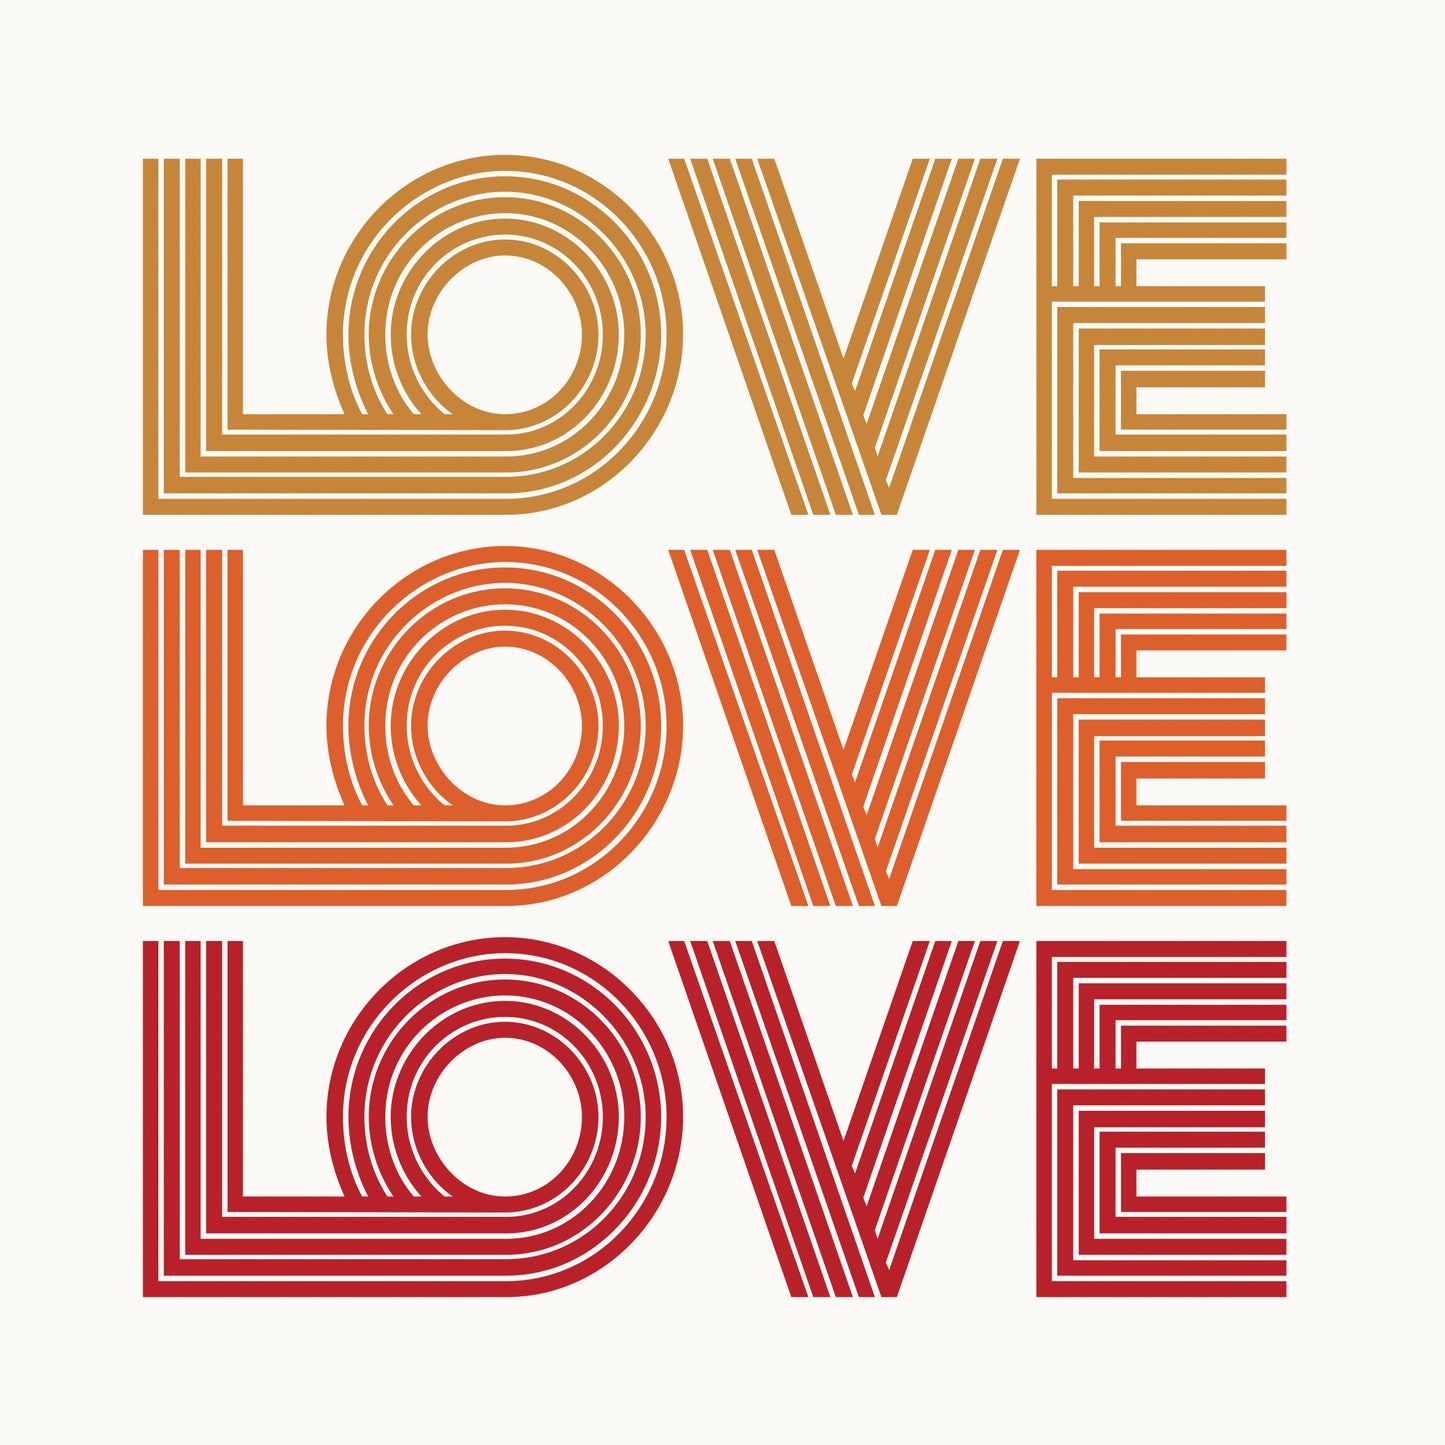 Fine Art Print "Love love love"